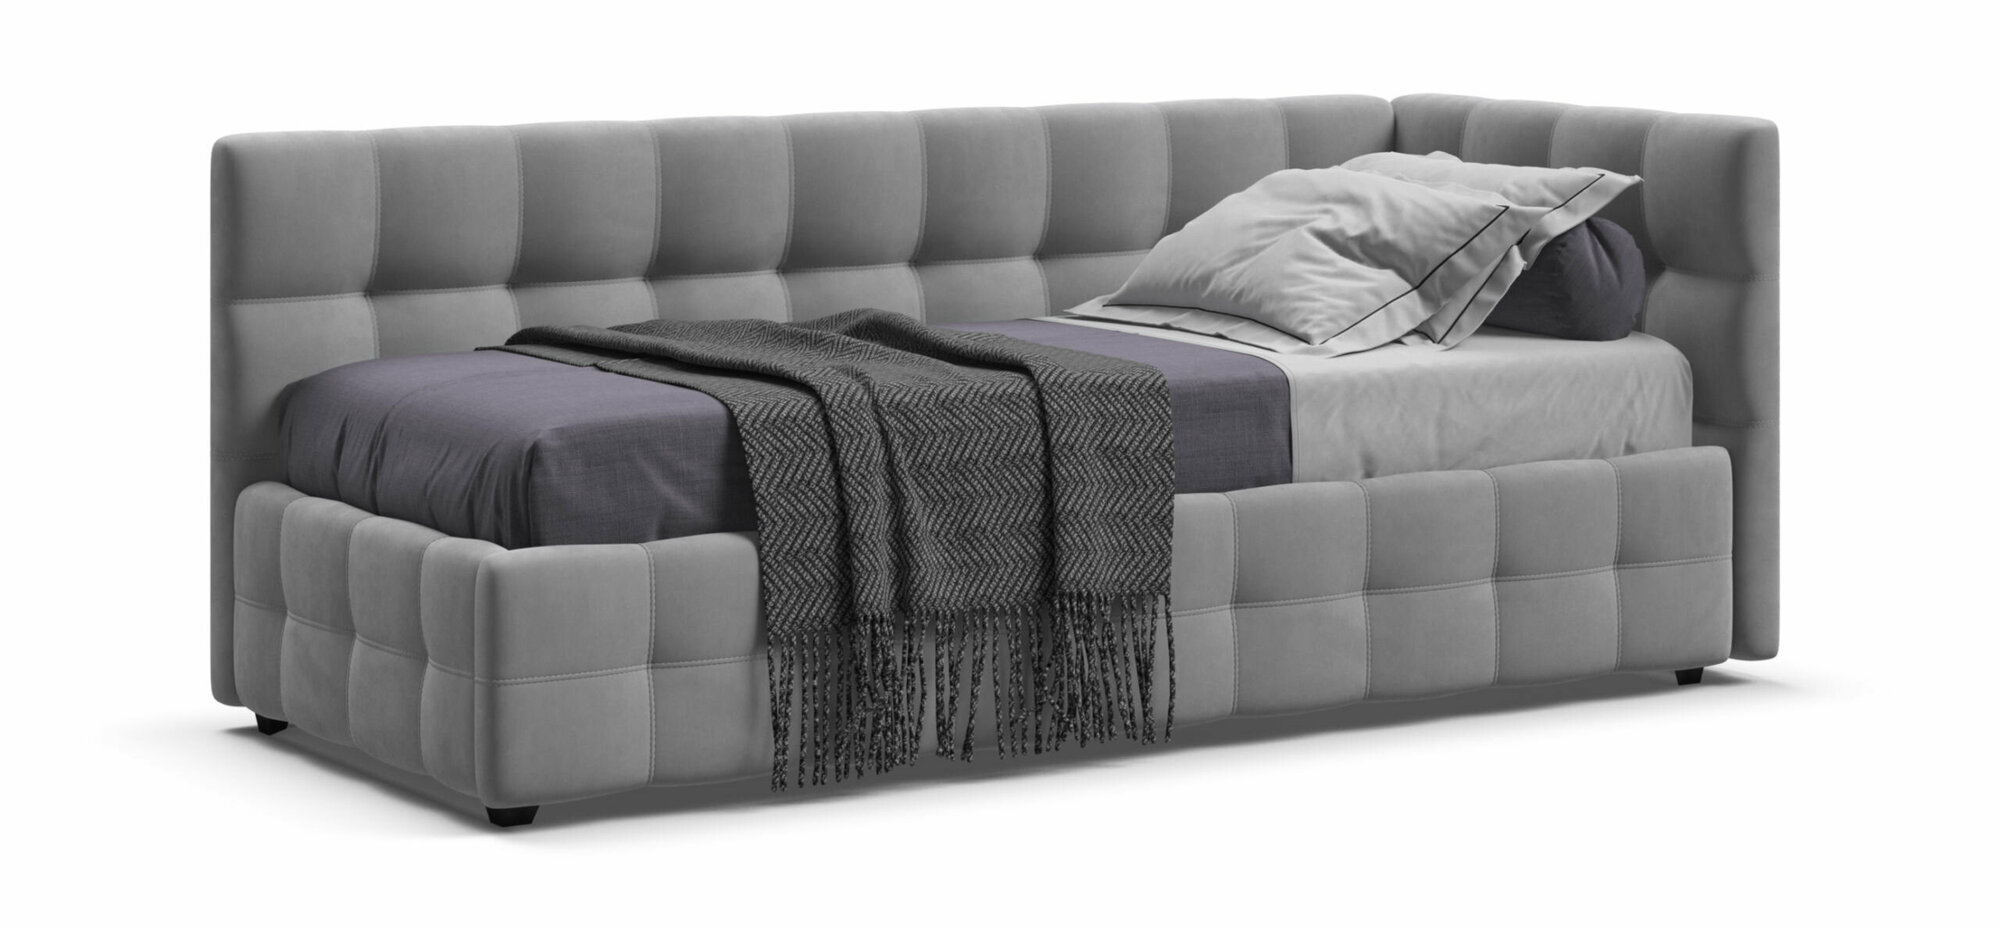 Односпальная кровать BOSS Sleep mini, с ящиками для хранения, велюр Monolit сталь, 90х200 см